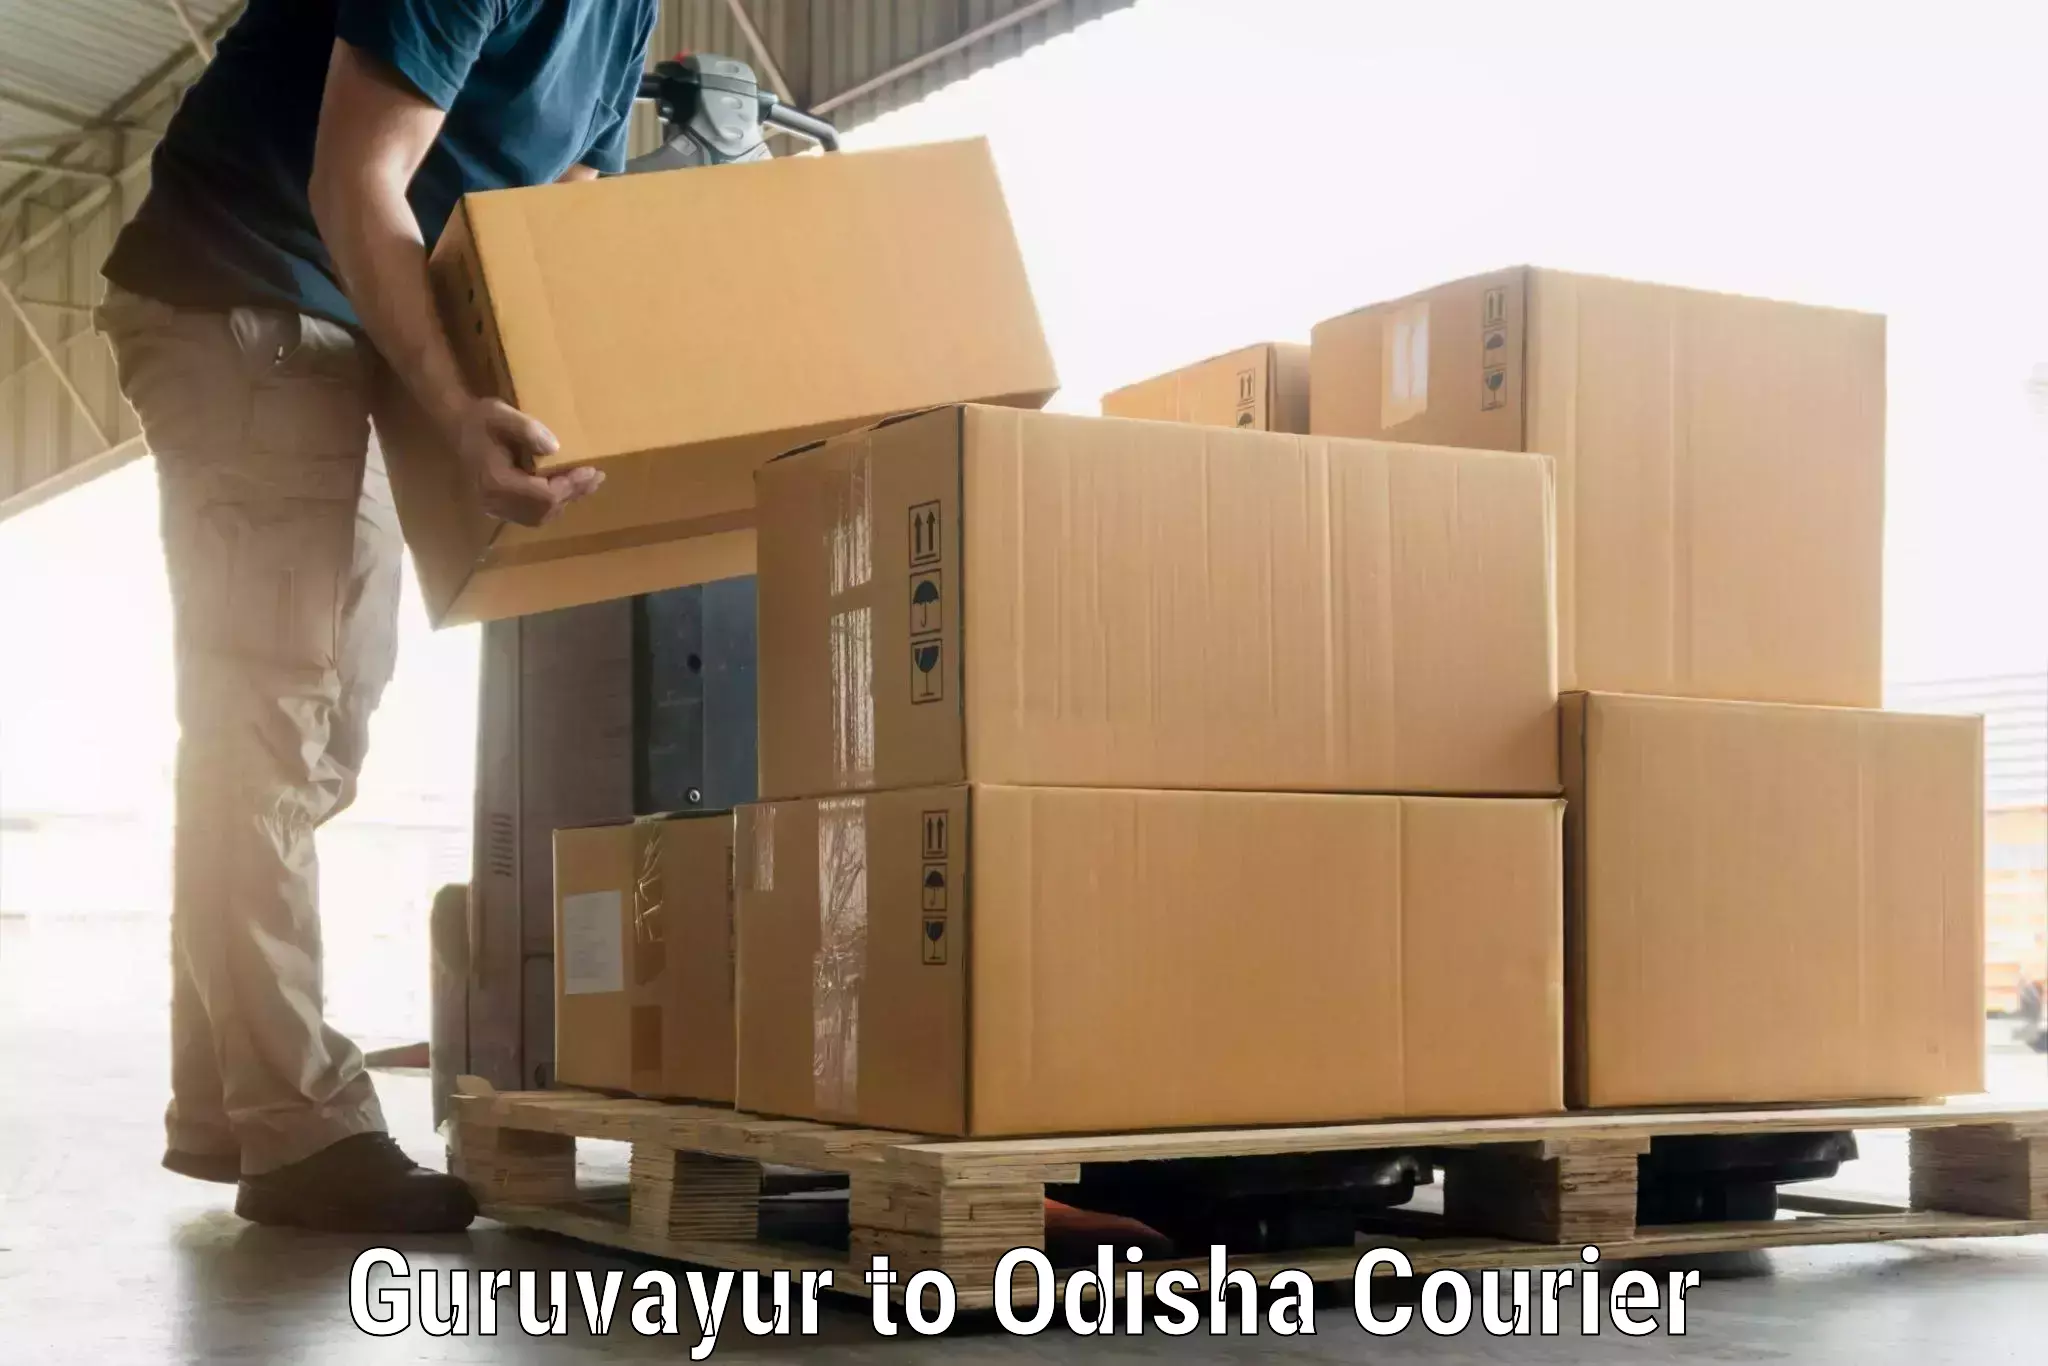 Group luggage shipping in Guruvayur to Kalahandi